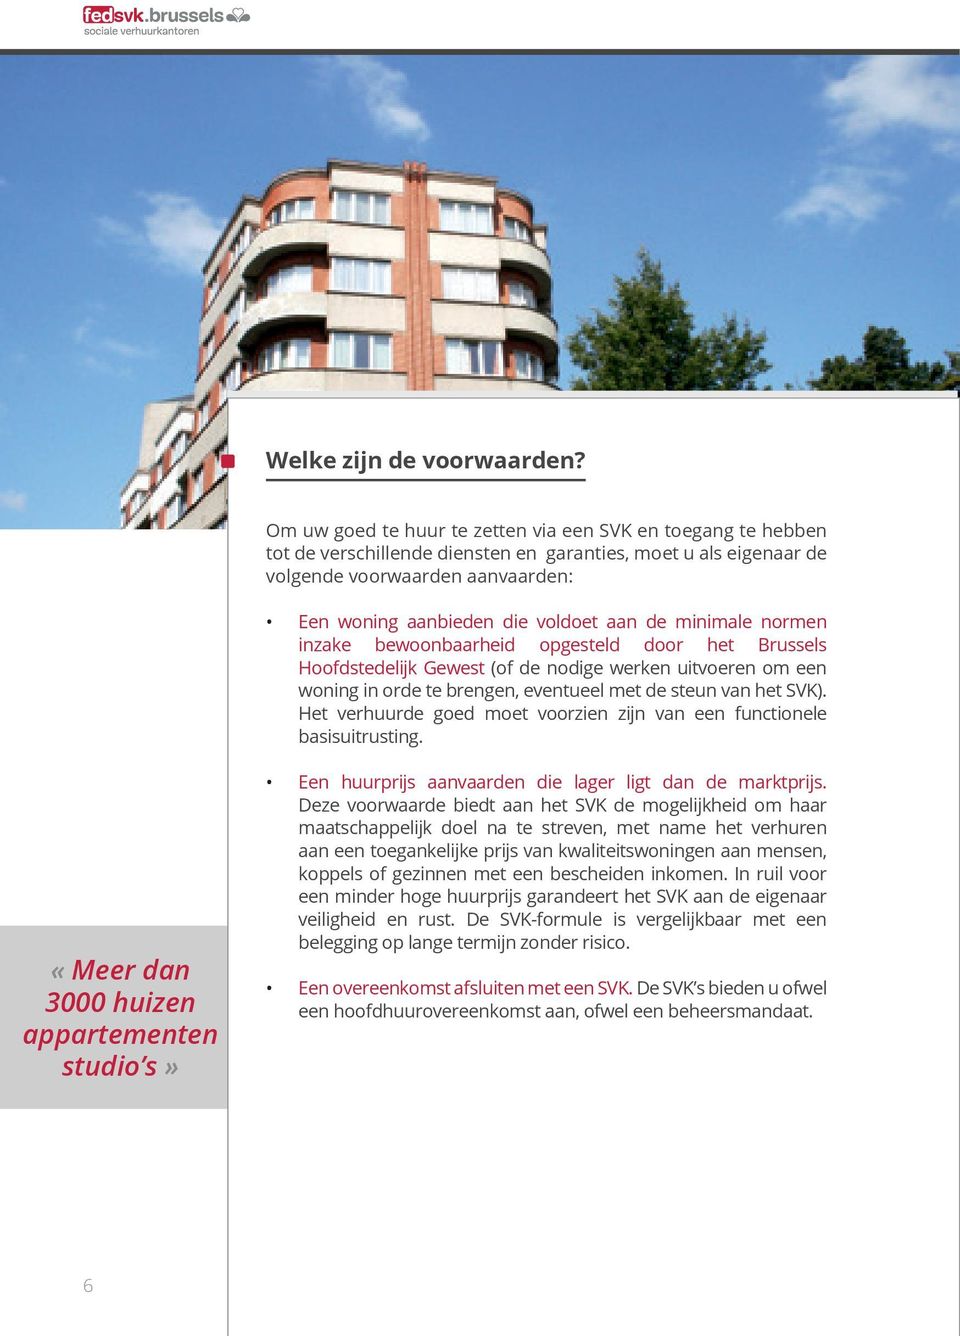 de minimale normen inzake bewoonbaarheid opgesteld door het Brussels Hoofdstedelijk Gewest (of de nodige werken uitvoeren om een woning in orde te brengen, eventueel met de steun van het SVK).